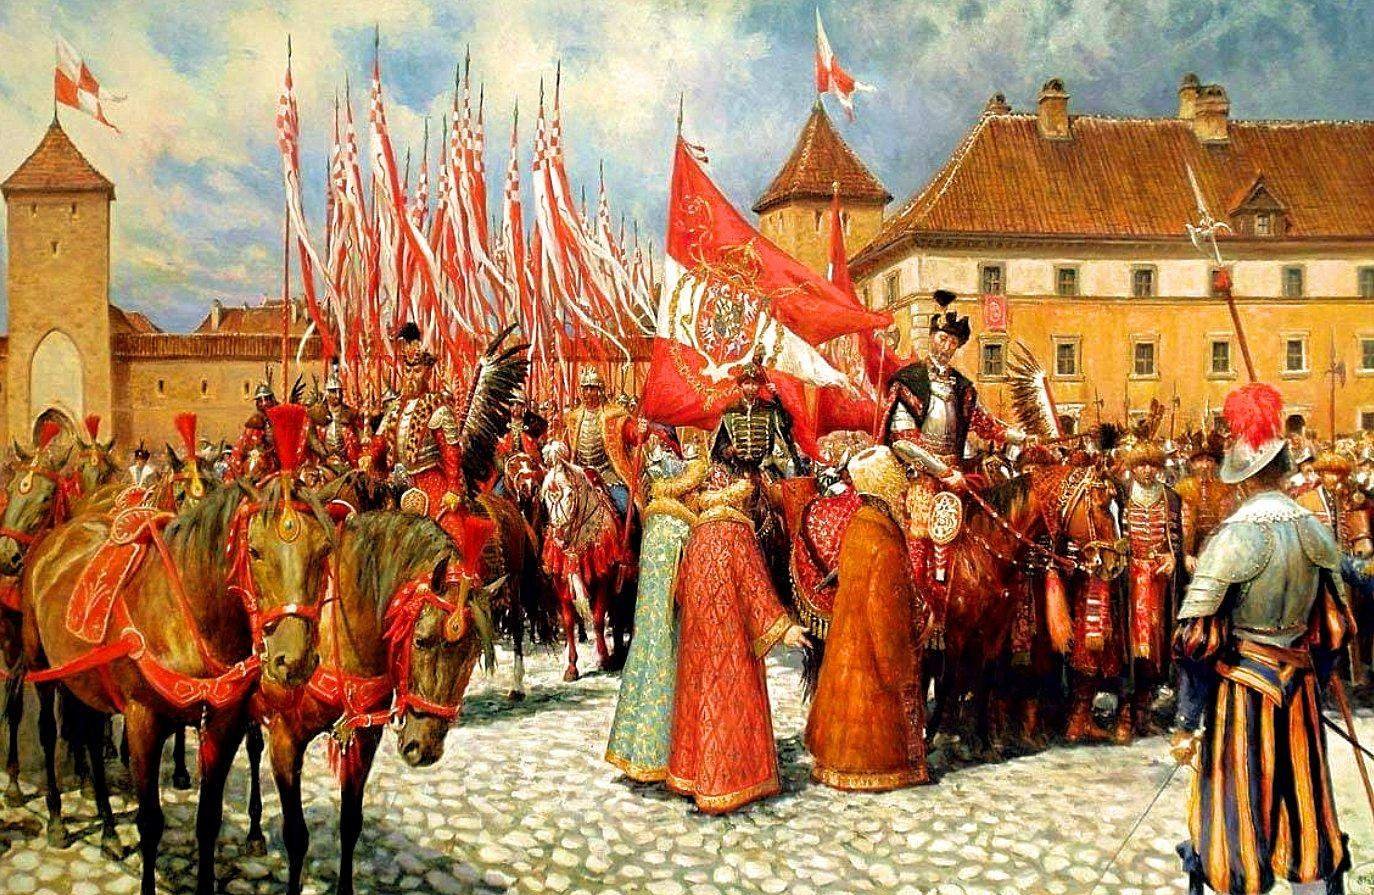 Речи посполитой это польша. Речь Посполитая 1569. Речь Посполитая Польша 17 веке. Речь Посполитая 18 век. Речь Посполитая 16-17 века.